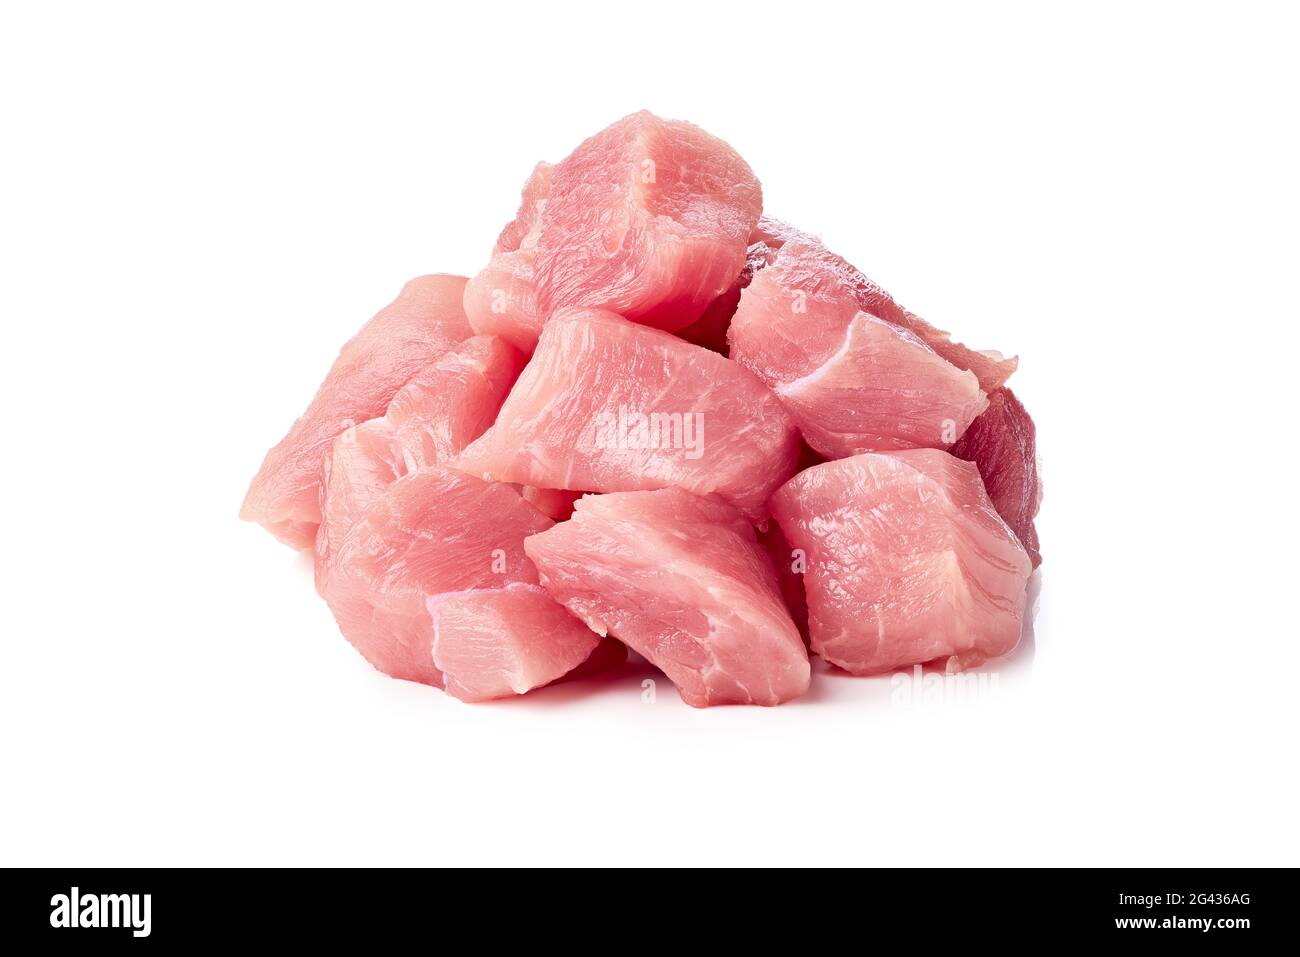 Haufen gehacktes rohes Schweinefleisch auf Weiß Stockfoto